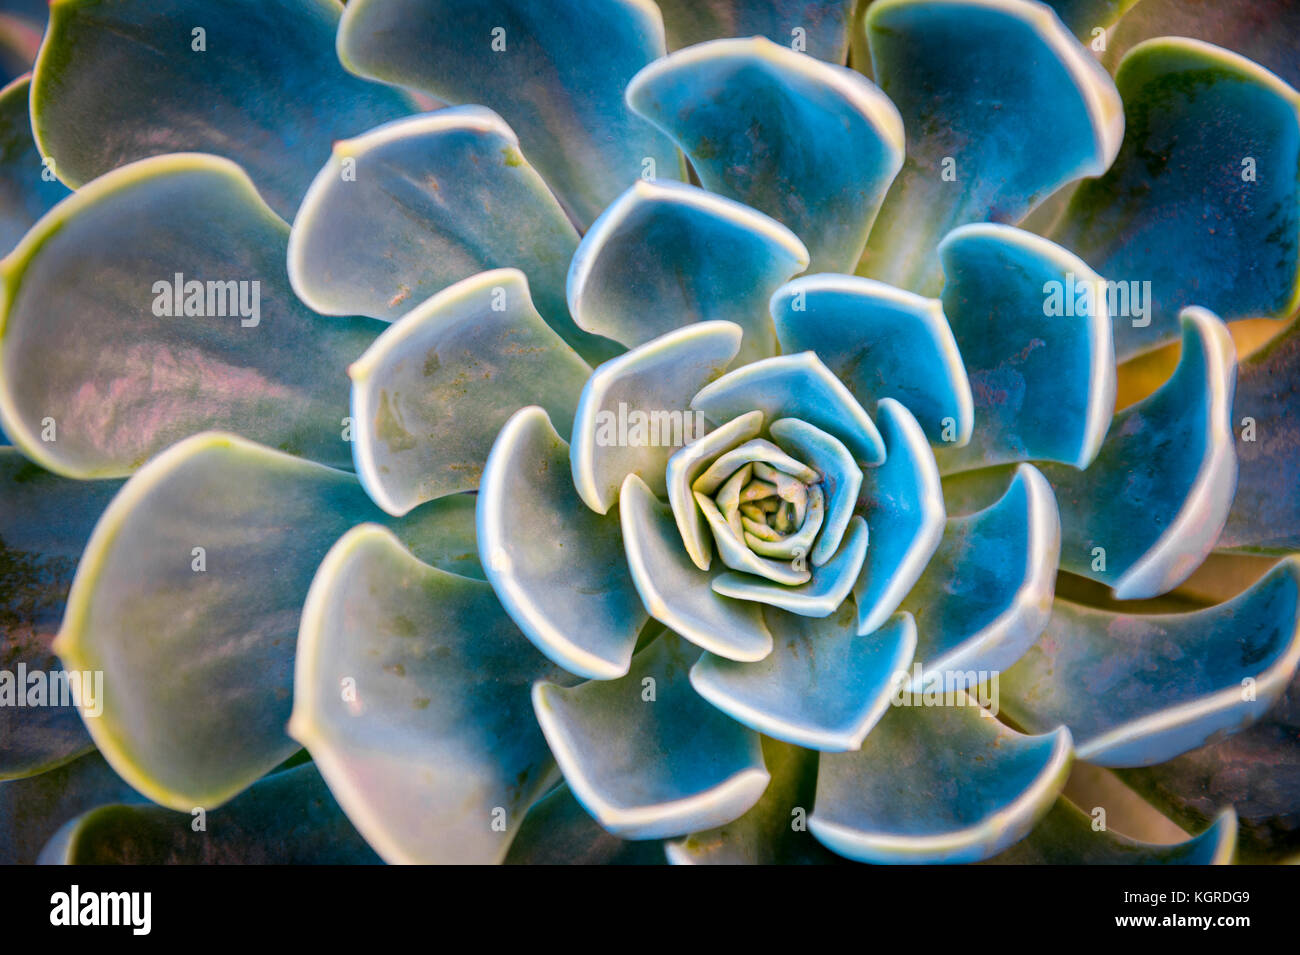 Abstract close-up en couleurs de ce modèle d'une rosette naturel plante succulente, echeveria capri, grandissant dans l'île méditerranéenne de Capri, italie Banque D'Images